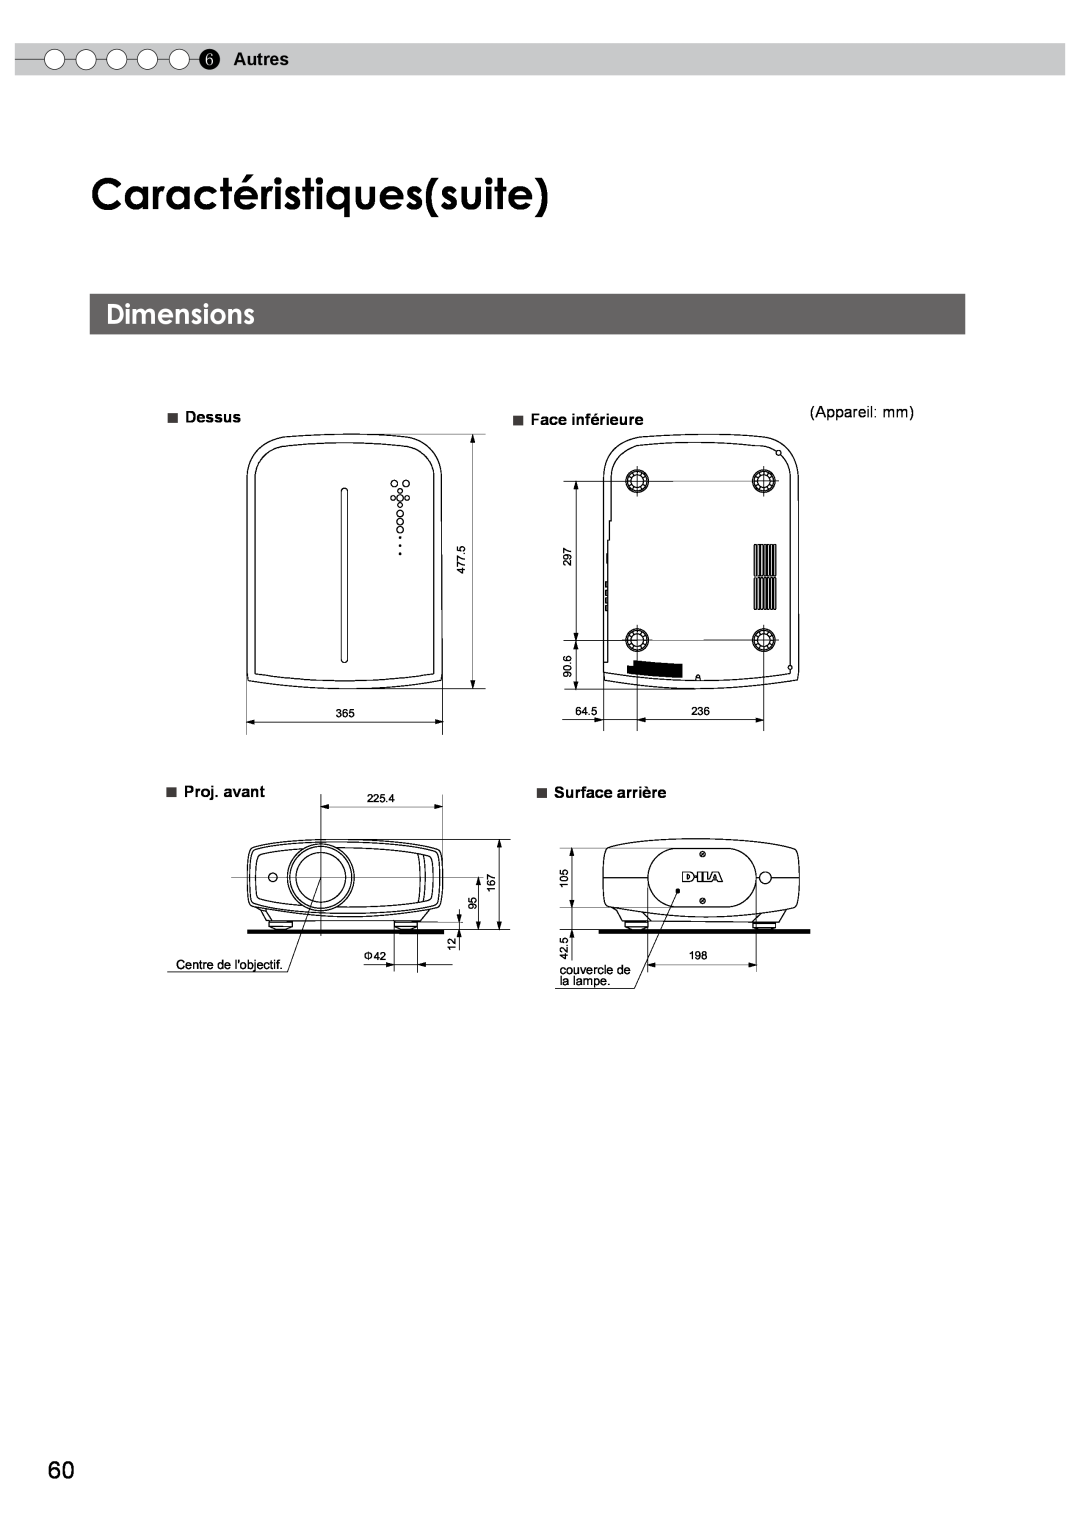 JVC PB006596599-0 manual Caractéristiquessuite, Dimensions, Autres, Appareil mm 